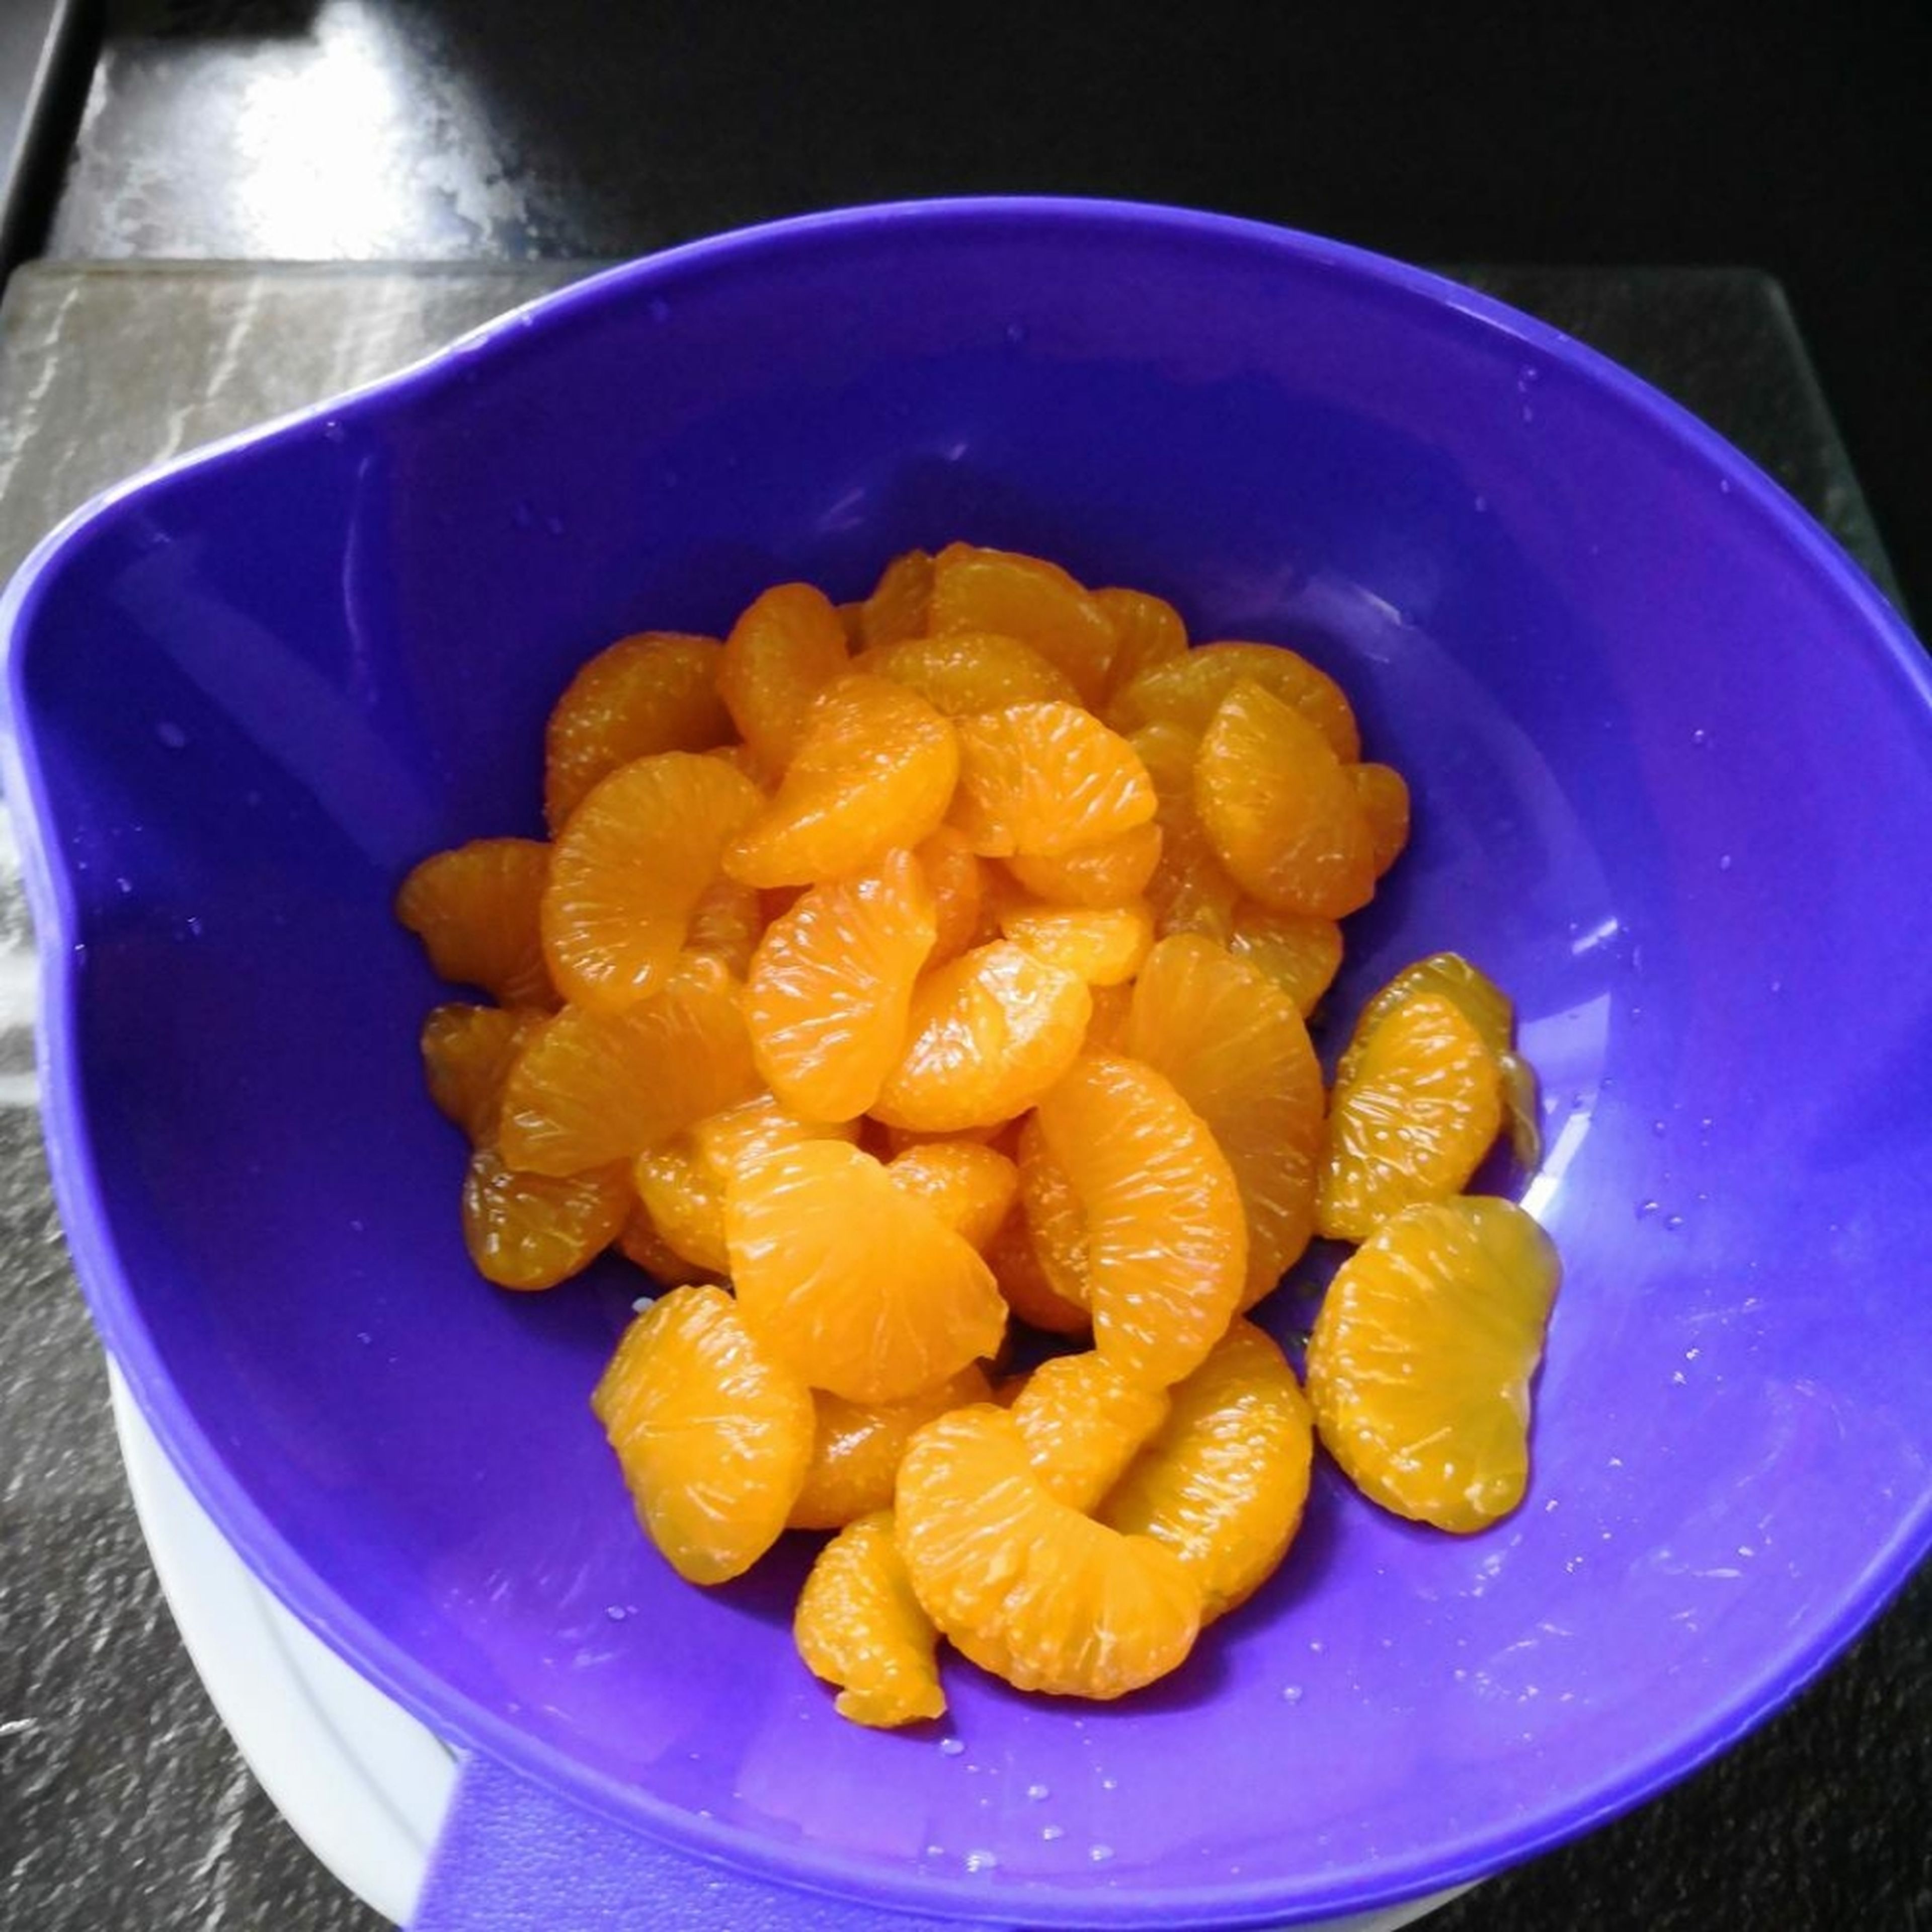 Mandarinen in einem Sieb abtropfen lassen.